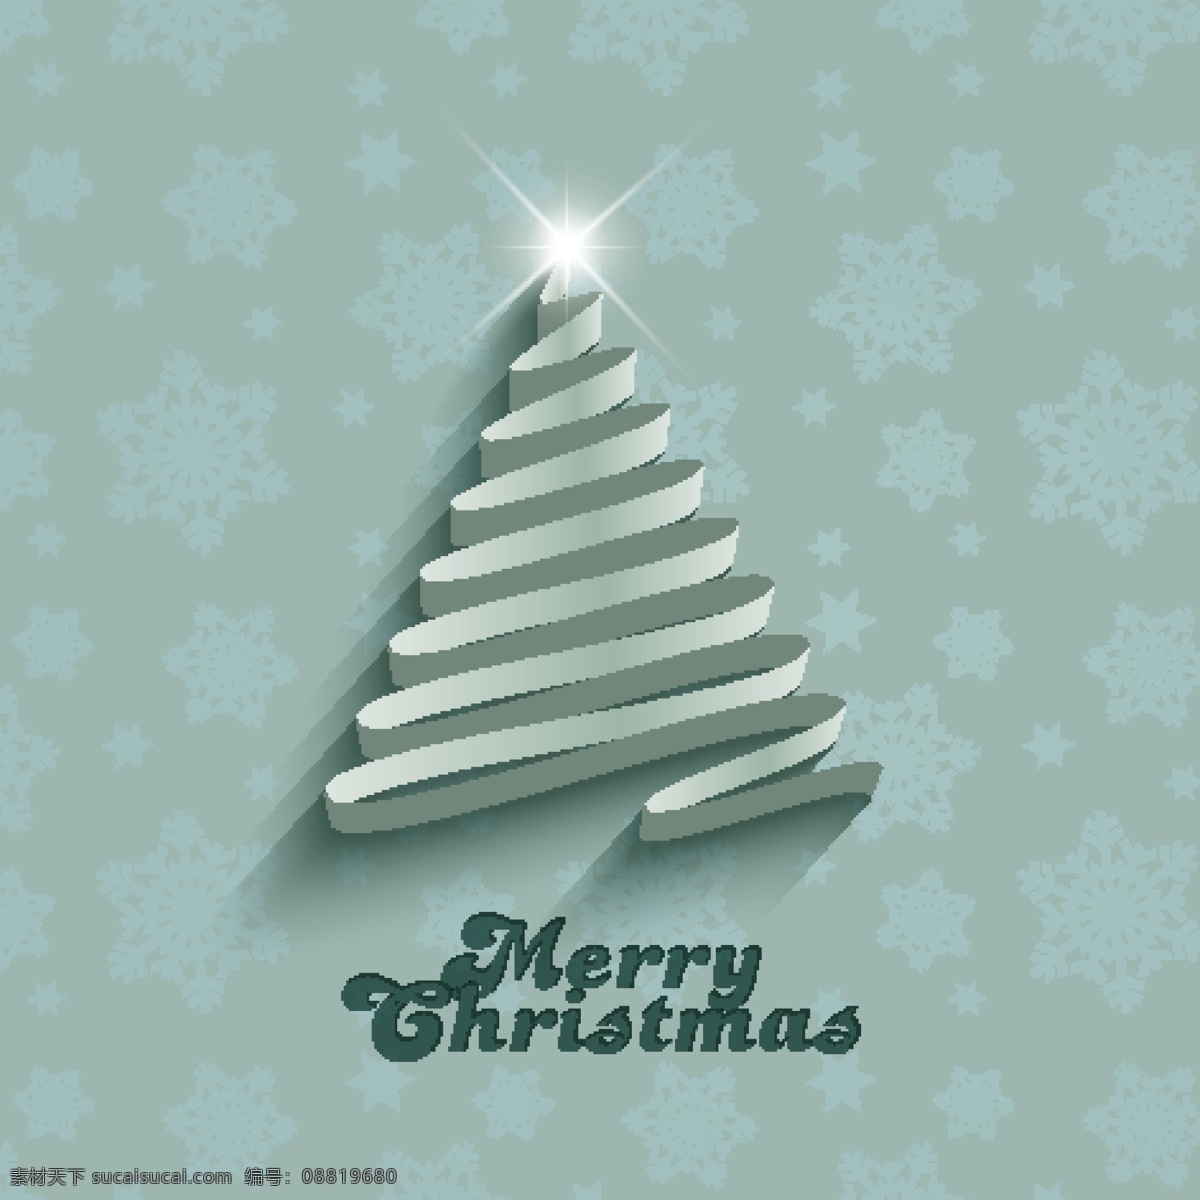 薄荷 色 圣诞 卡片 圣诞树 摘要 卡 光 圣诞快乐 冬天快乐 圣诞卡 圣诞色 庆典 雪花 节日 节日快乐 圣诞灯 问候 绿色